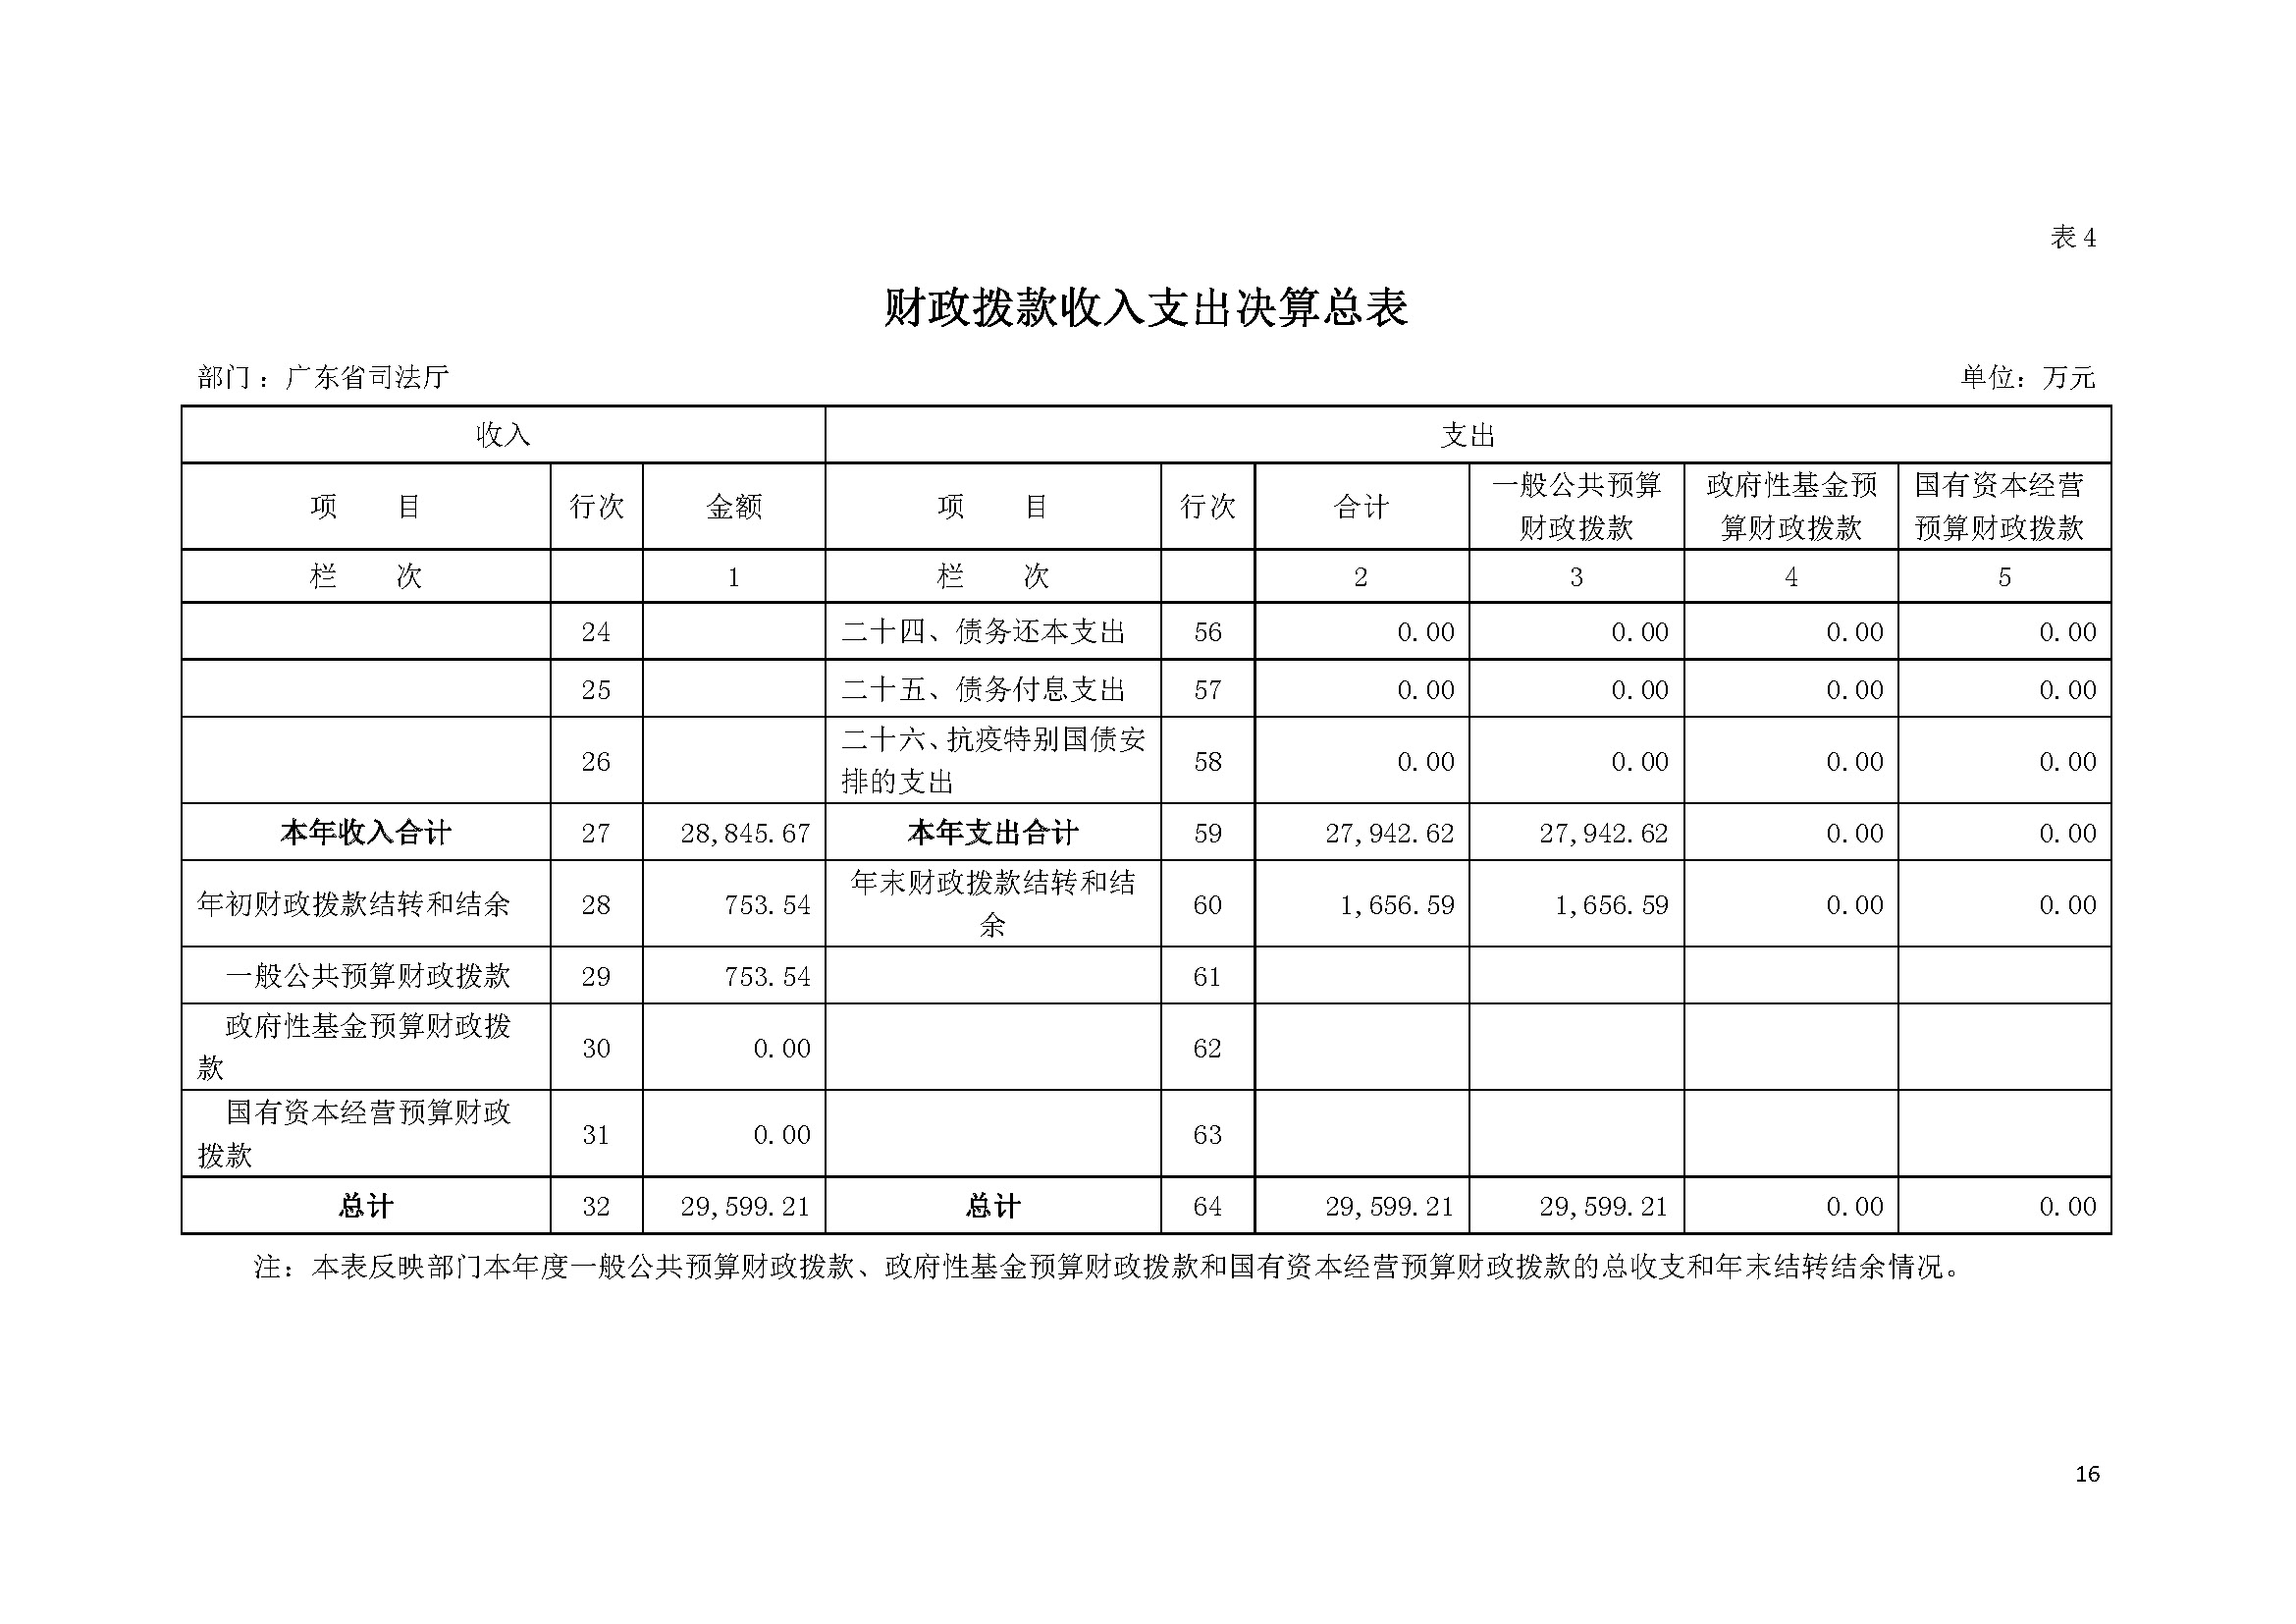 2021年广东省司法厅部门决算 _页面_16.jpg